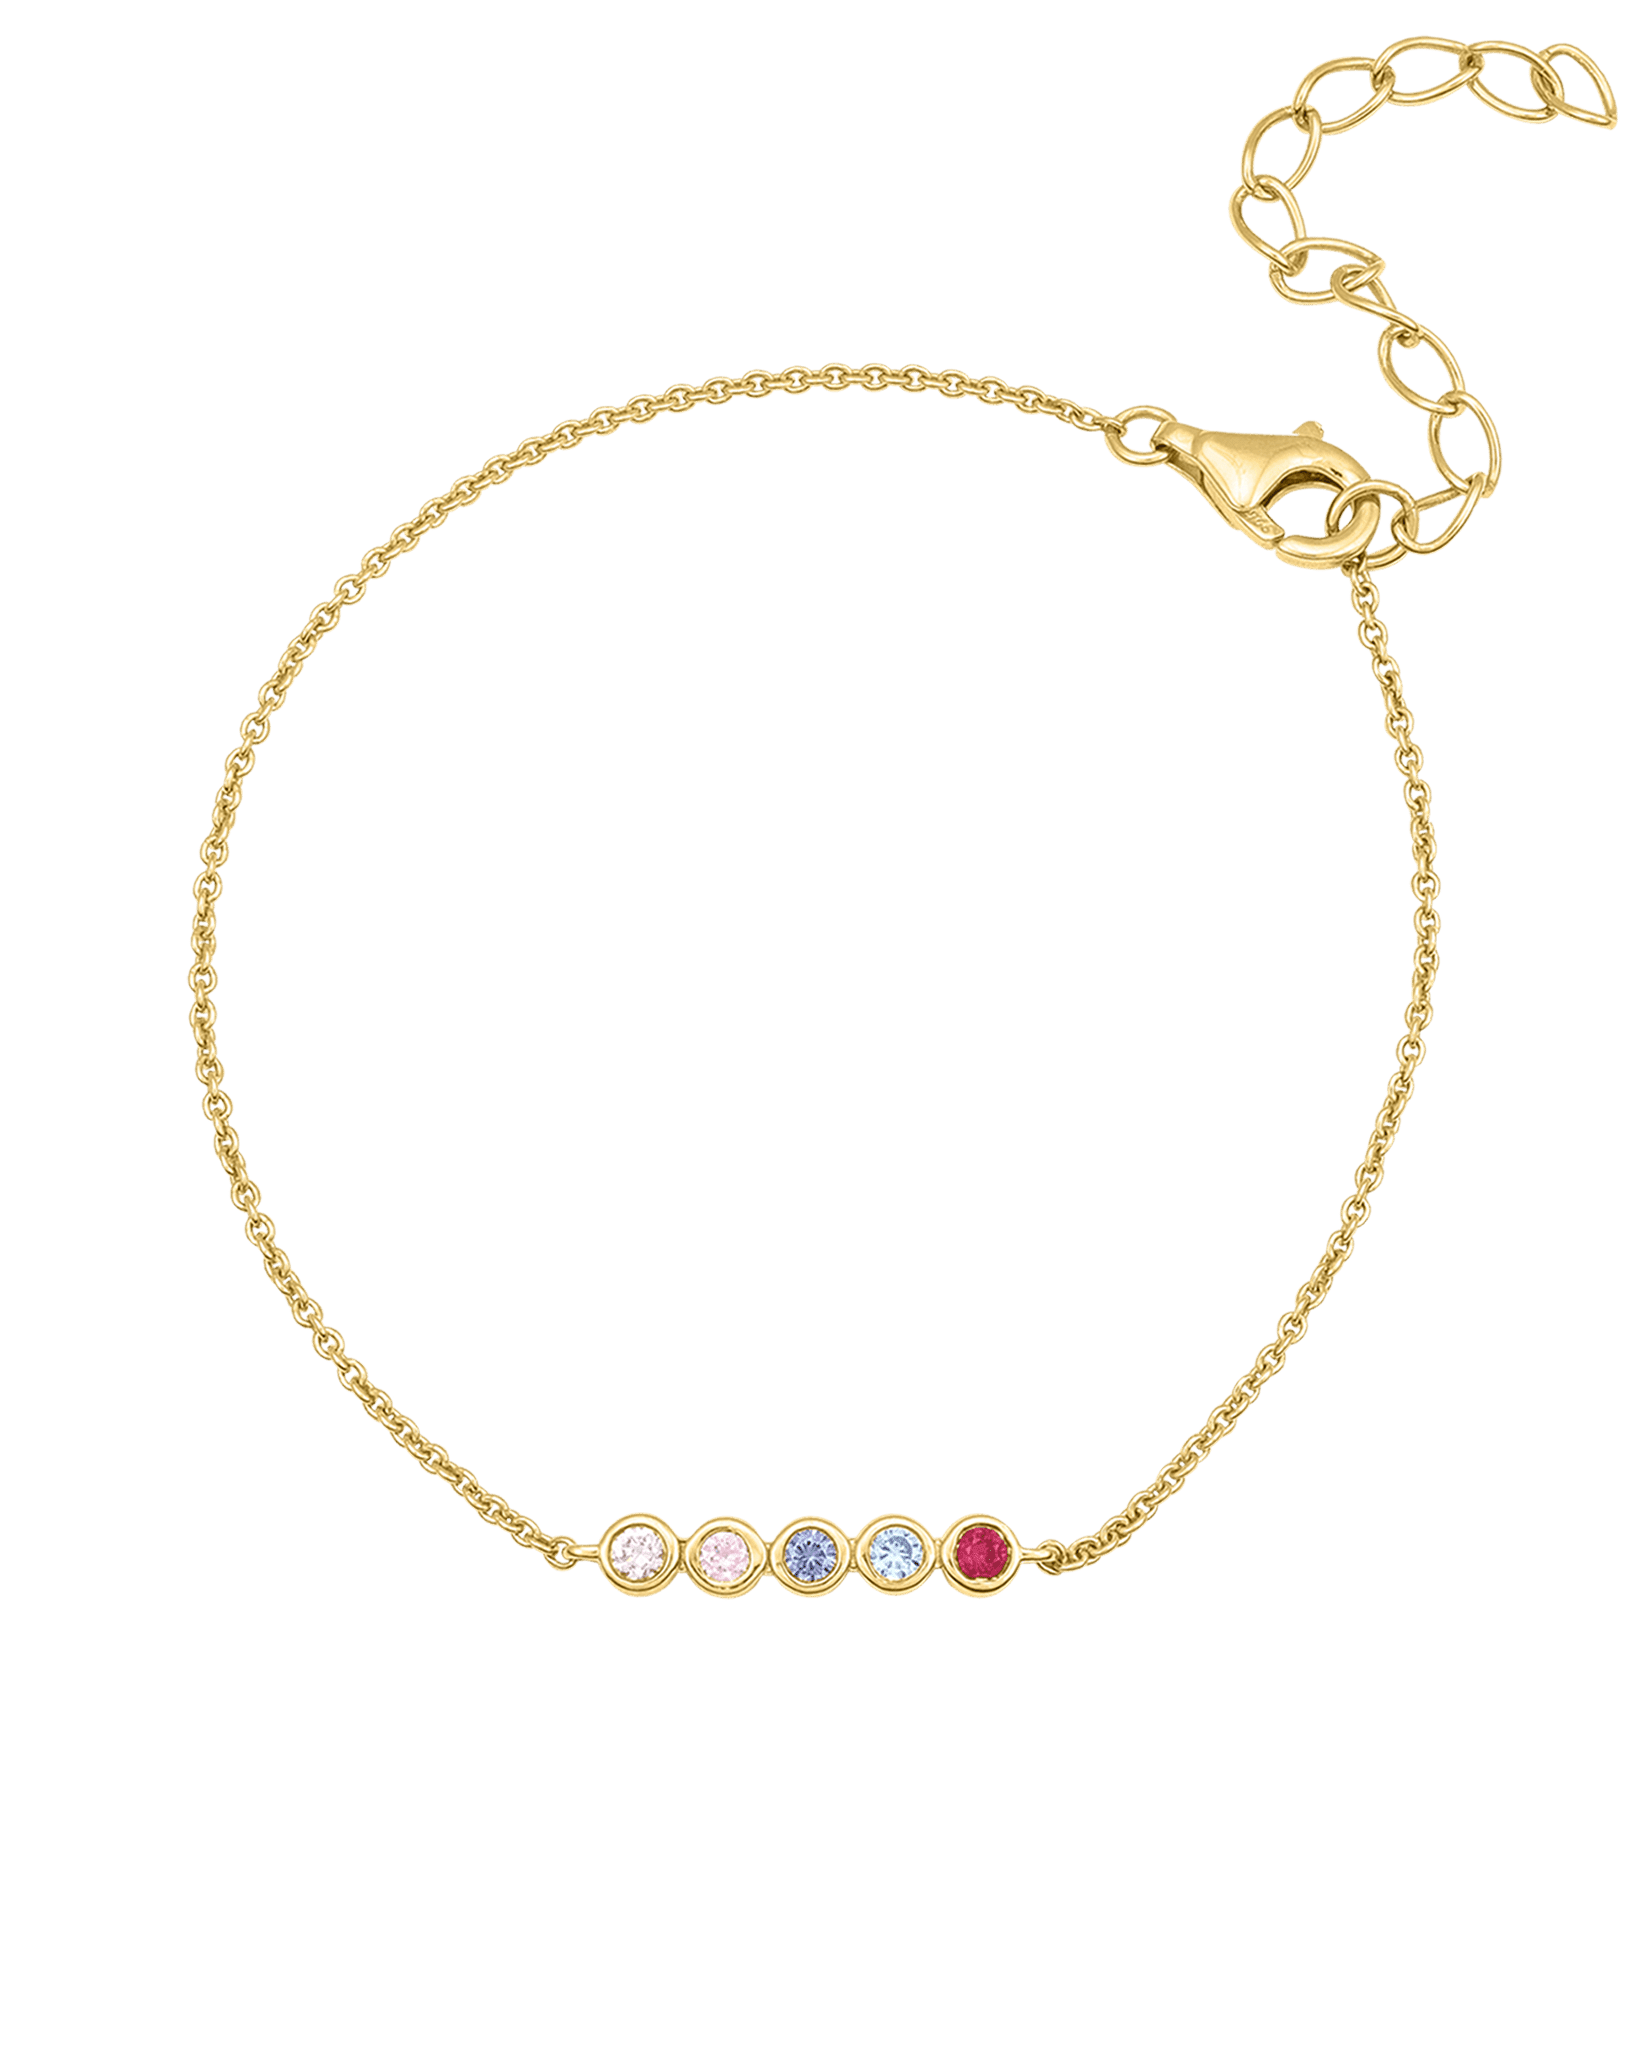 Bracelet Chaine Pierres Précieuses - Or Jaune Plaqué 18 carats Bracelets magal-dev 1 Pierre Précieuse 15cm + 2.5cm chaînette d'extension (Poignet: Small - Medium) 